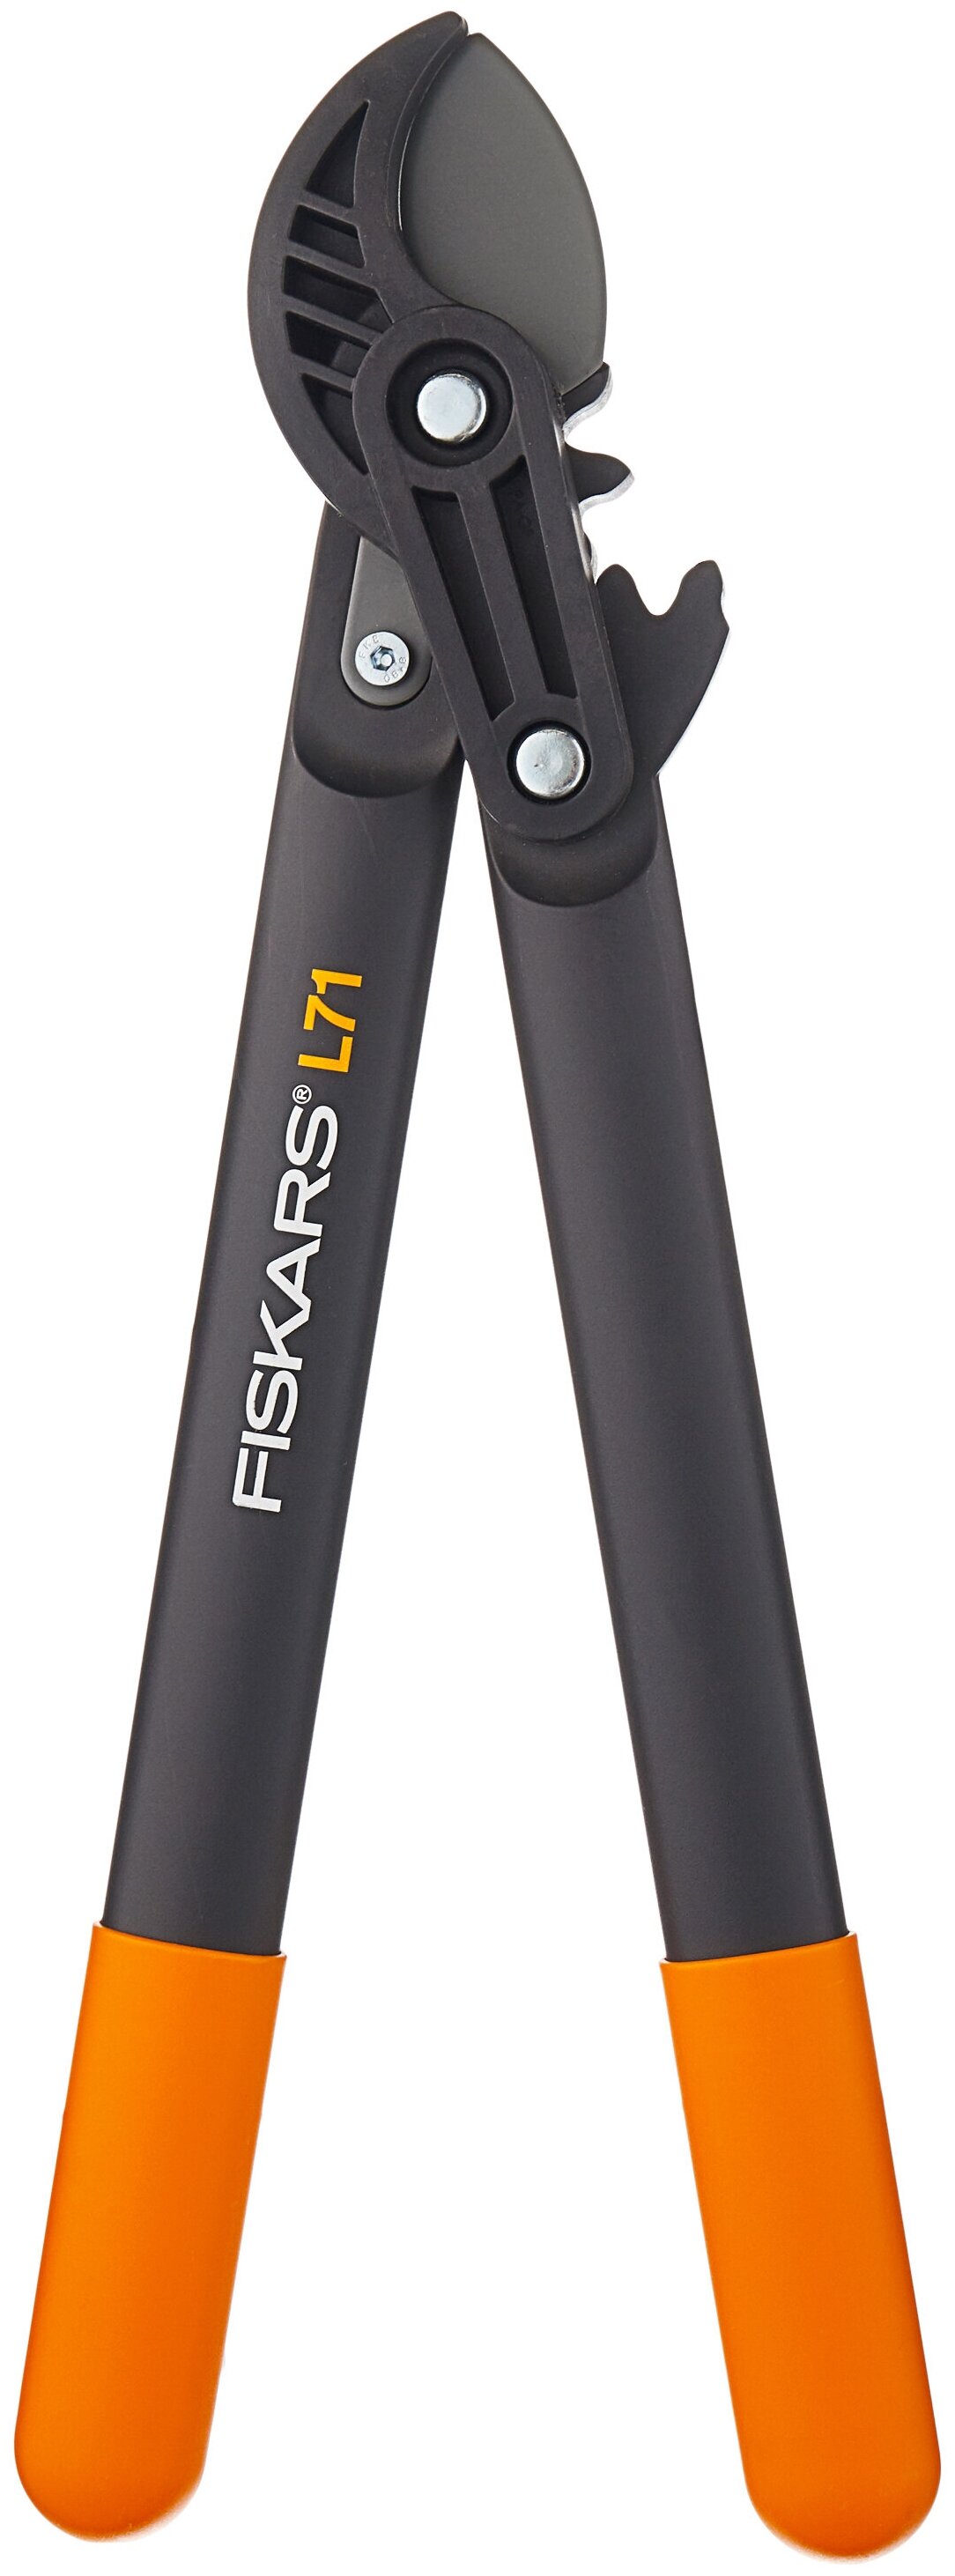 Сучкорез Fiskars PowerGear L71, двухрычажный, храповый механизм, мax диаметр ветвей 3.8 см (1001556)